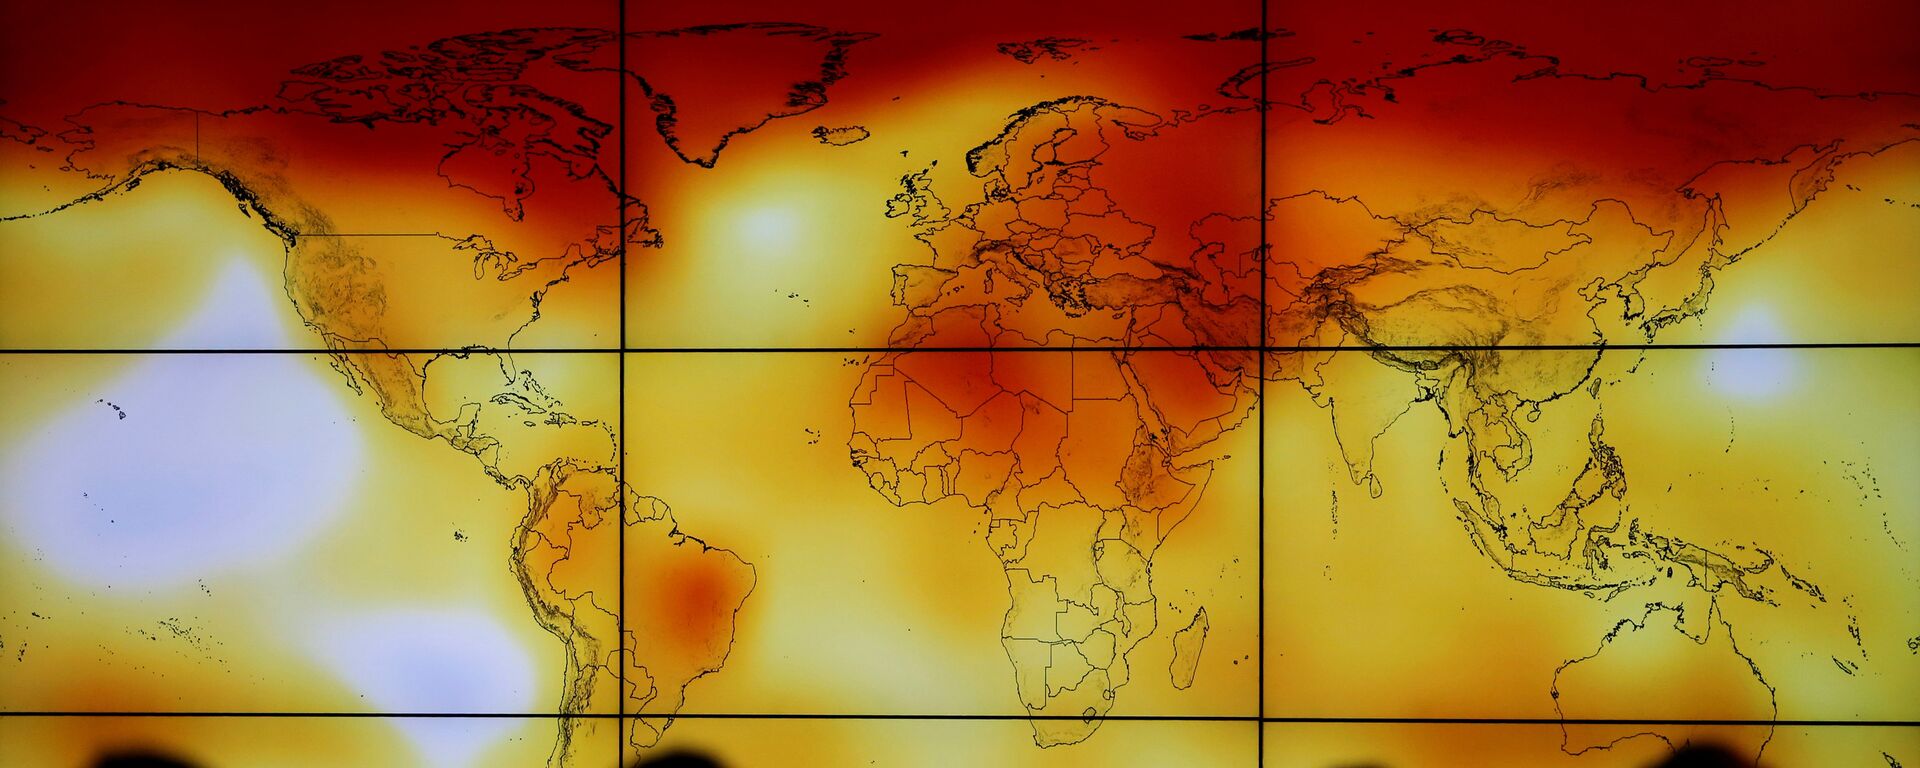 El cambio climático (imagen referencial) - Sputnik Mundo, 1920, 03.11.2020